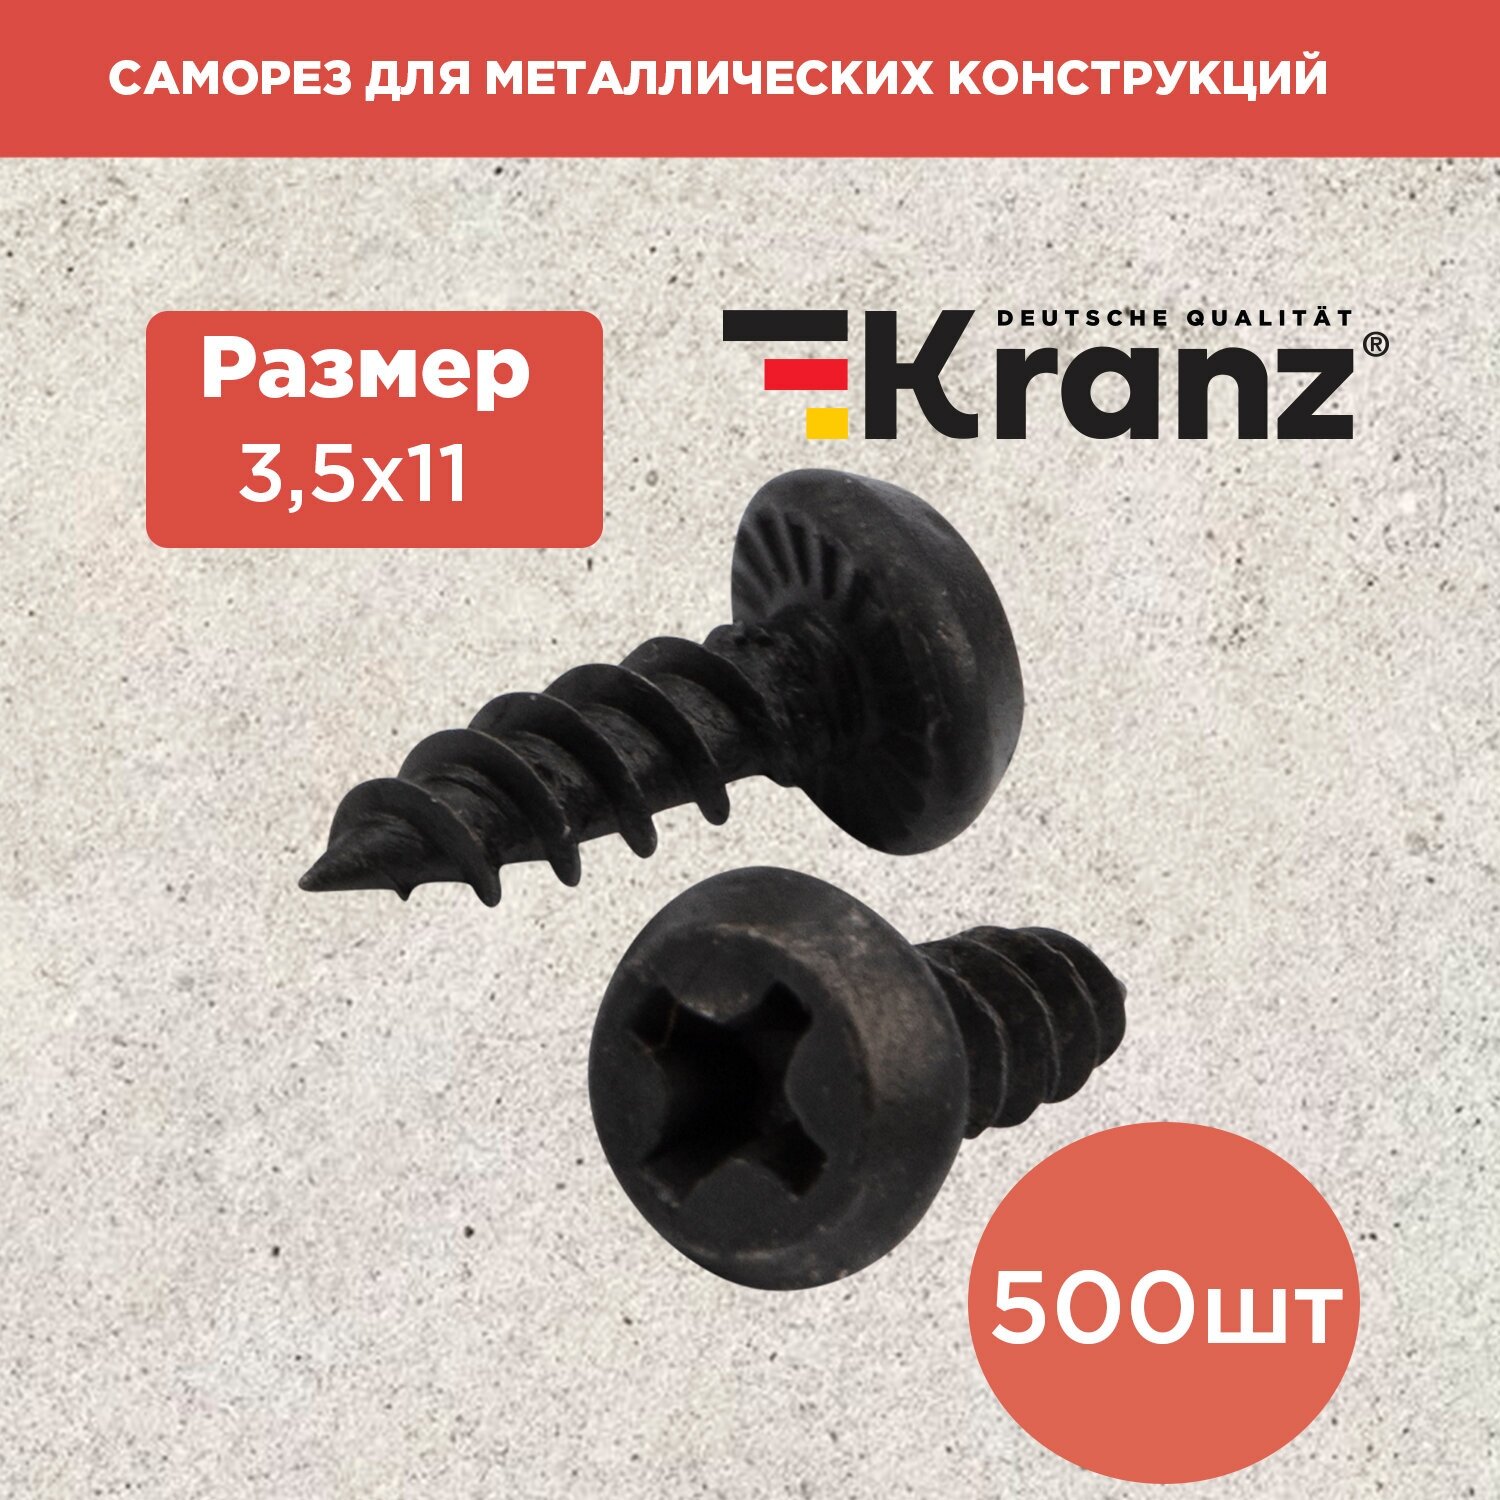 Саморез для металлических конструкций острый 3,5x11, 500 шт KRANZ